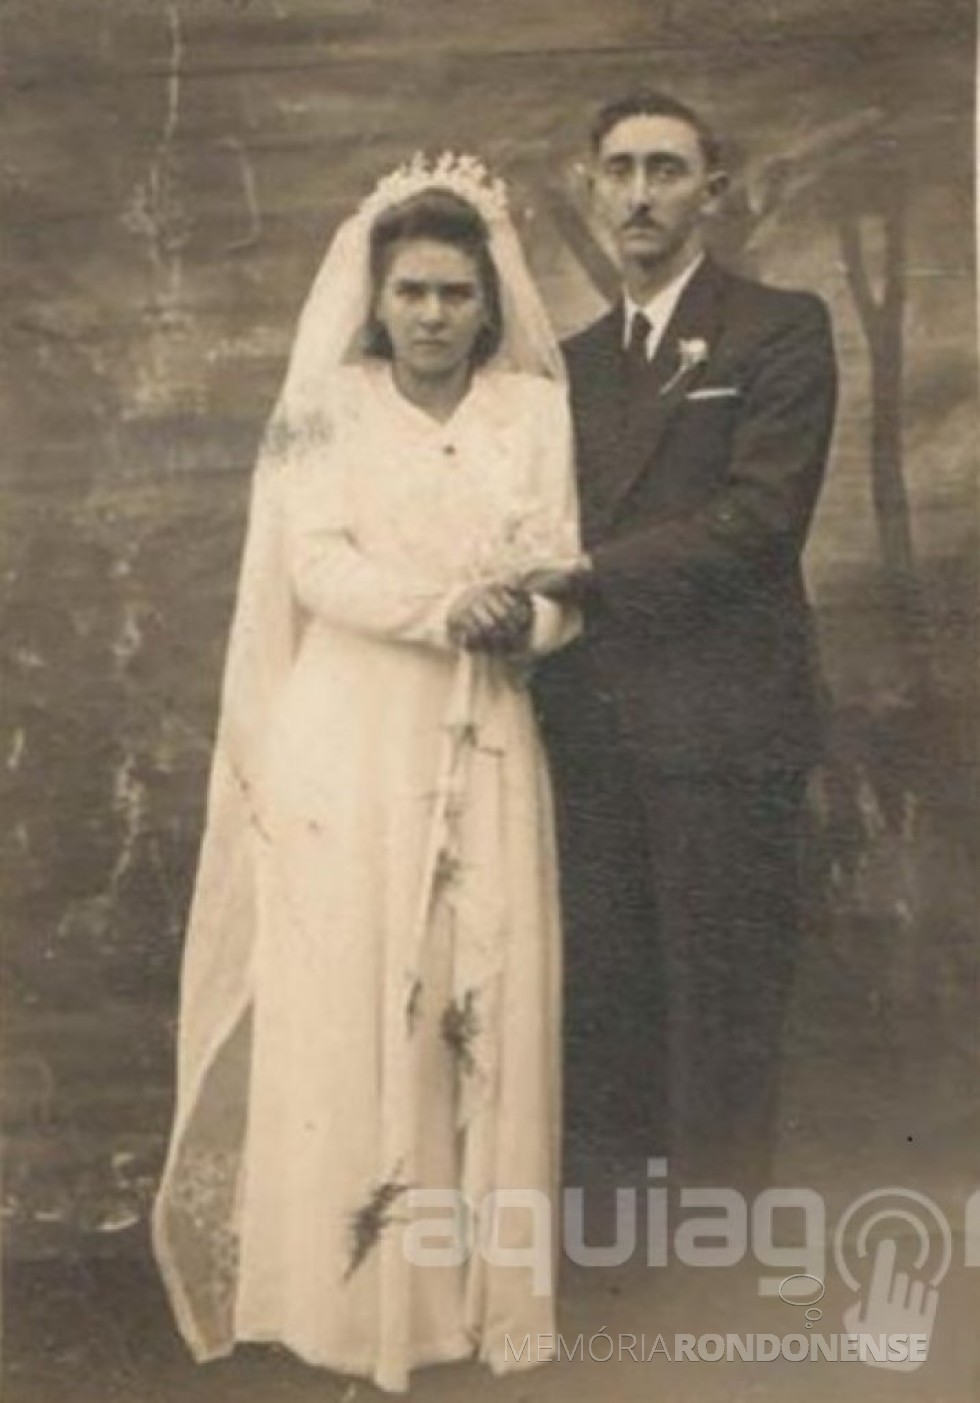 || Noivos Irma Selvina Diesel e Nivo Dickel, casal pioneiro rondonense, que se casaram em maio de 1948. 
Imagem: Acervo AquiAgora.net - FOTO 1 - 